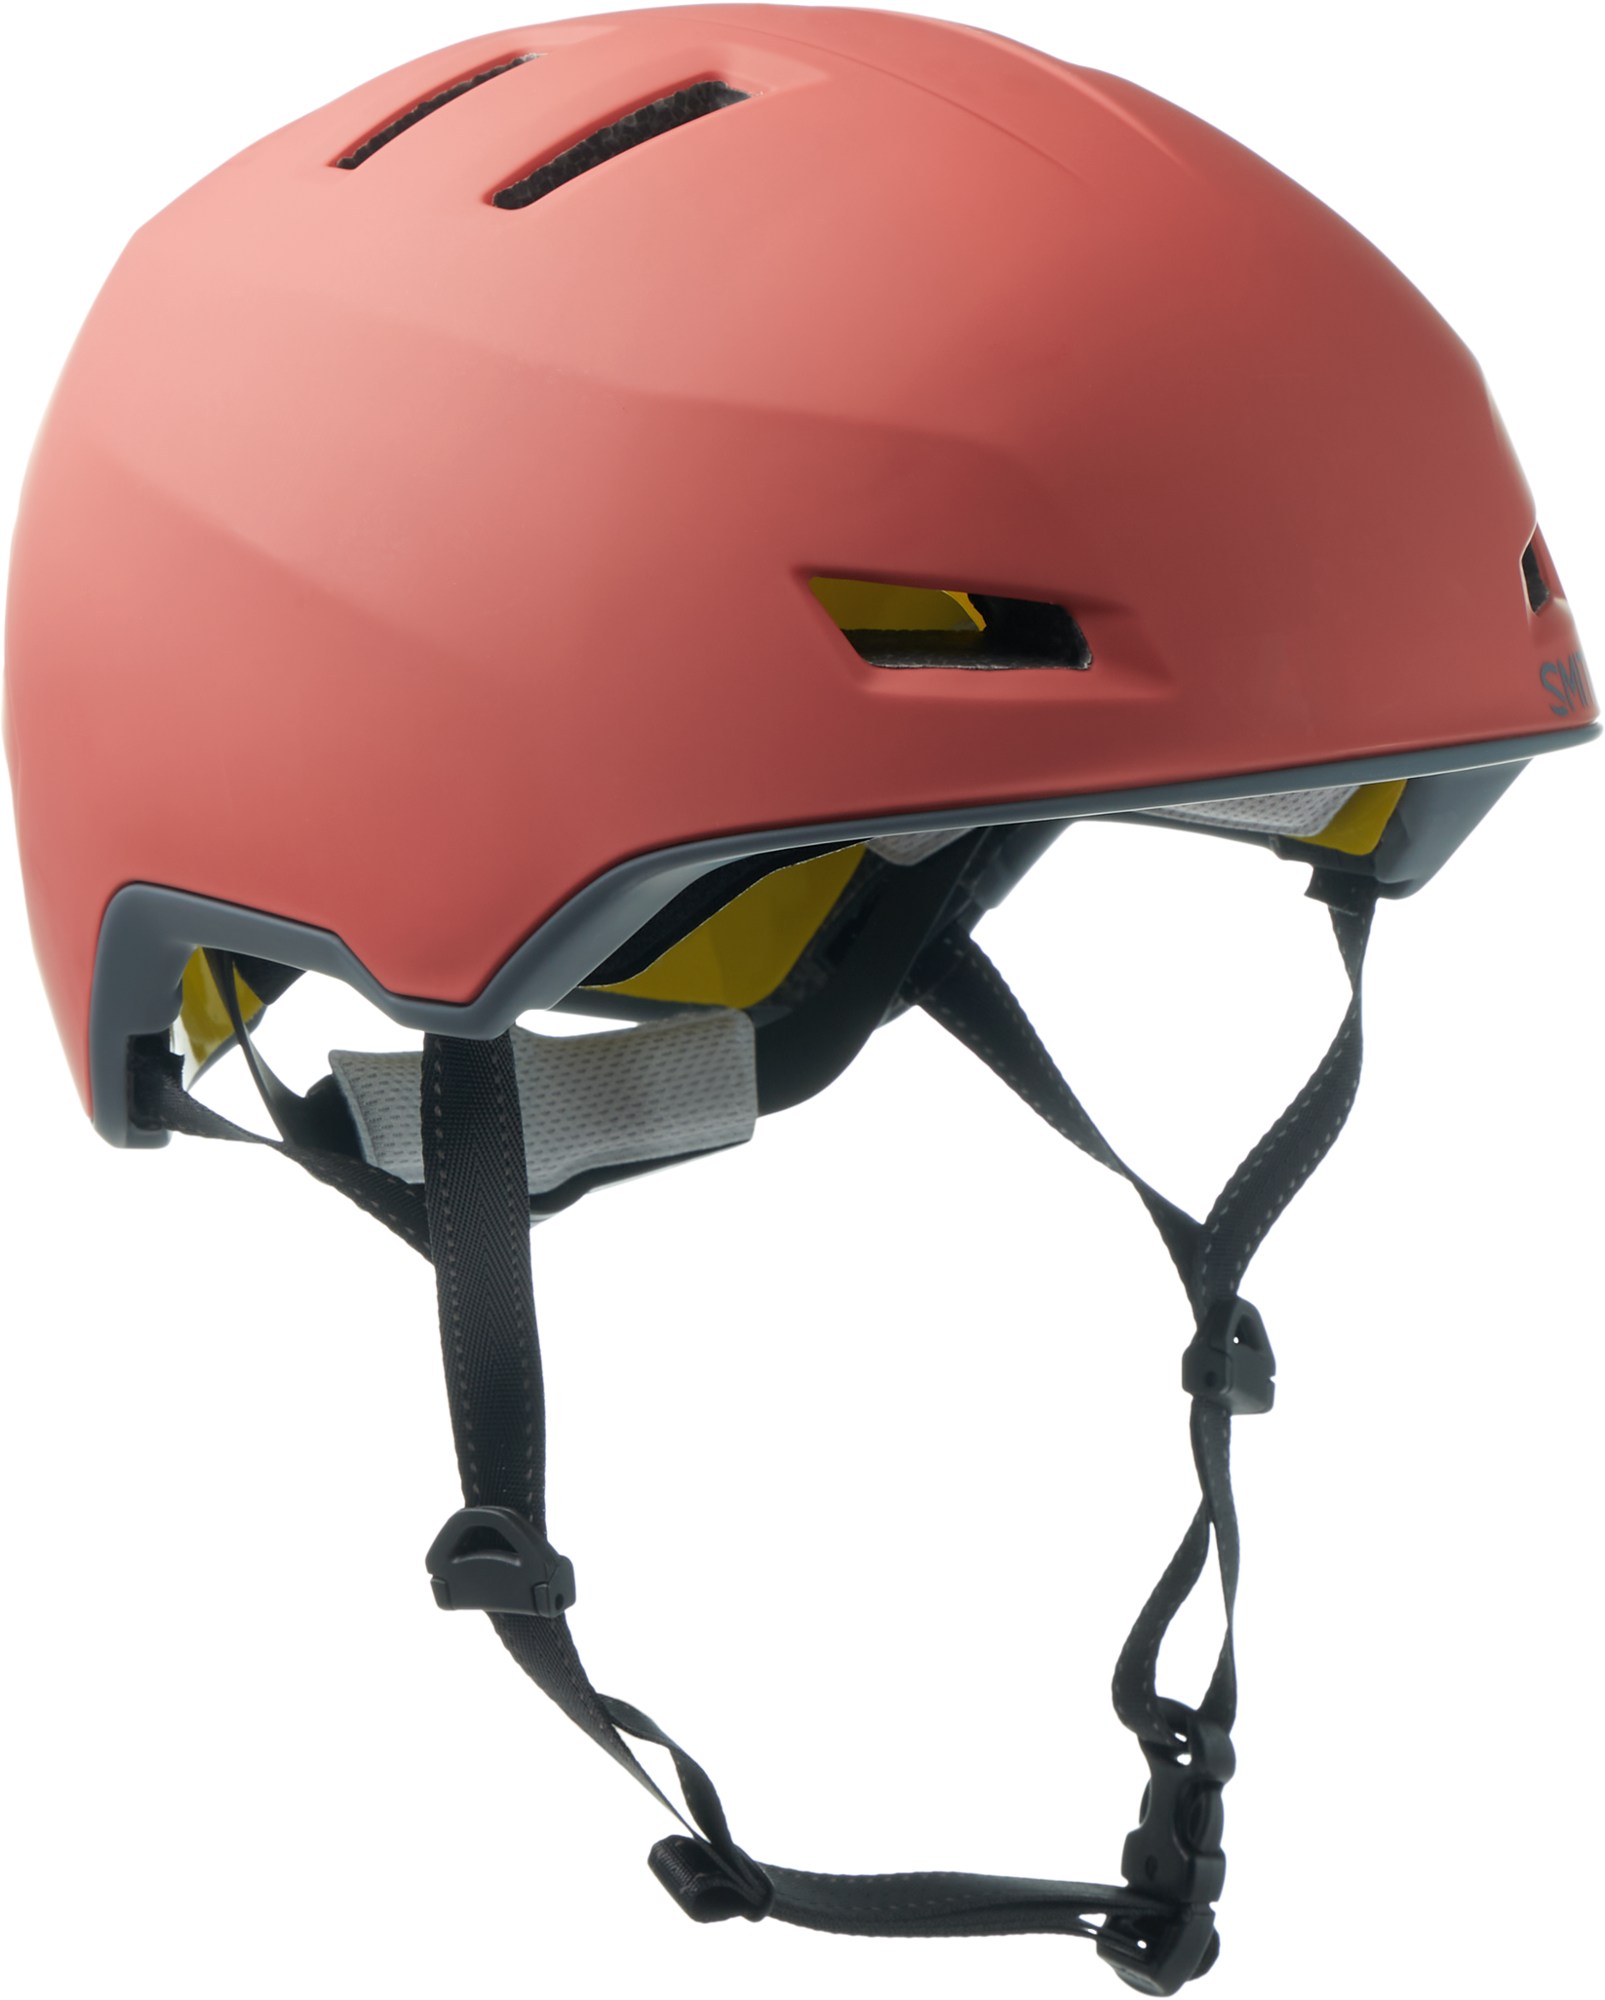 Велосипедный шлем Express MIPS Smith, розовый